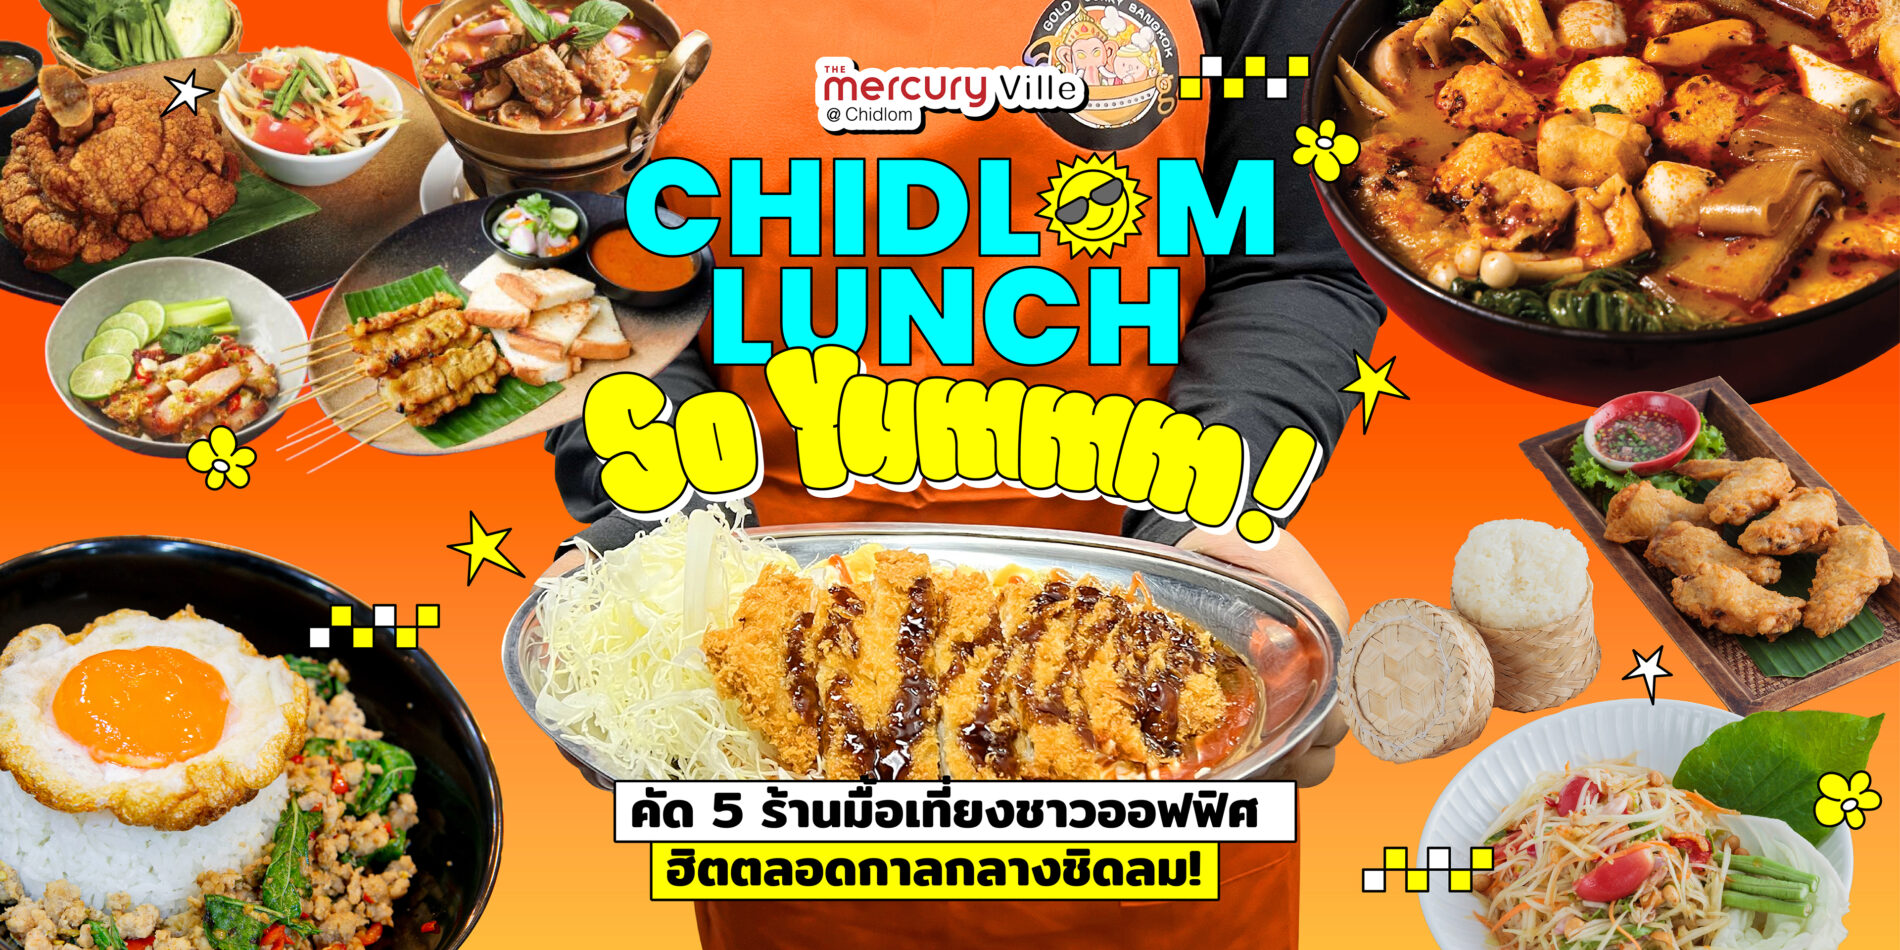 Chidlom Lunch So Yummm! เที่ยงนี้แวะมาชาร์จพลัง พร้อมตามปักหมุด 5 ร้านมื้อเที่ยงยอดฮิตของ #ชาวชิดลม